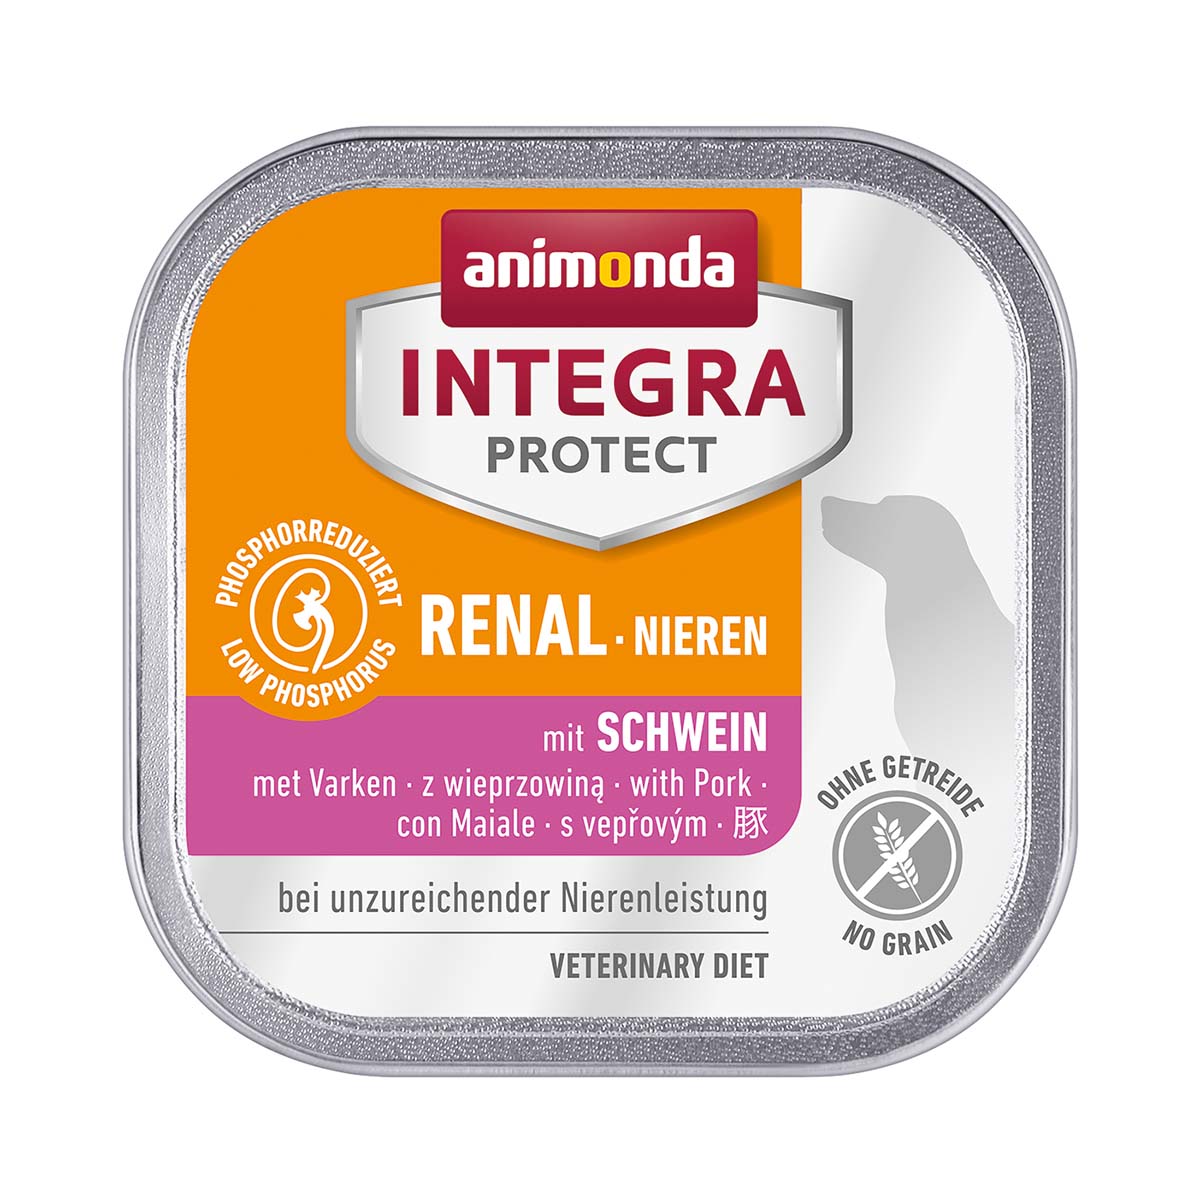 animonda Integra Protect Niere Schwein 11x150g von animonda Integra Protect